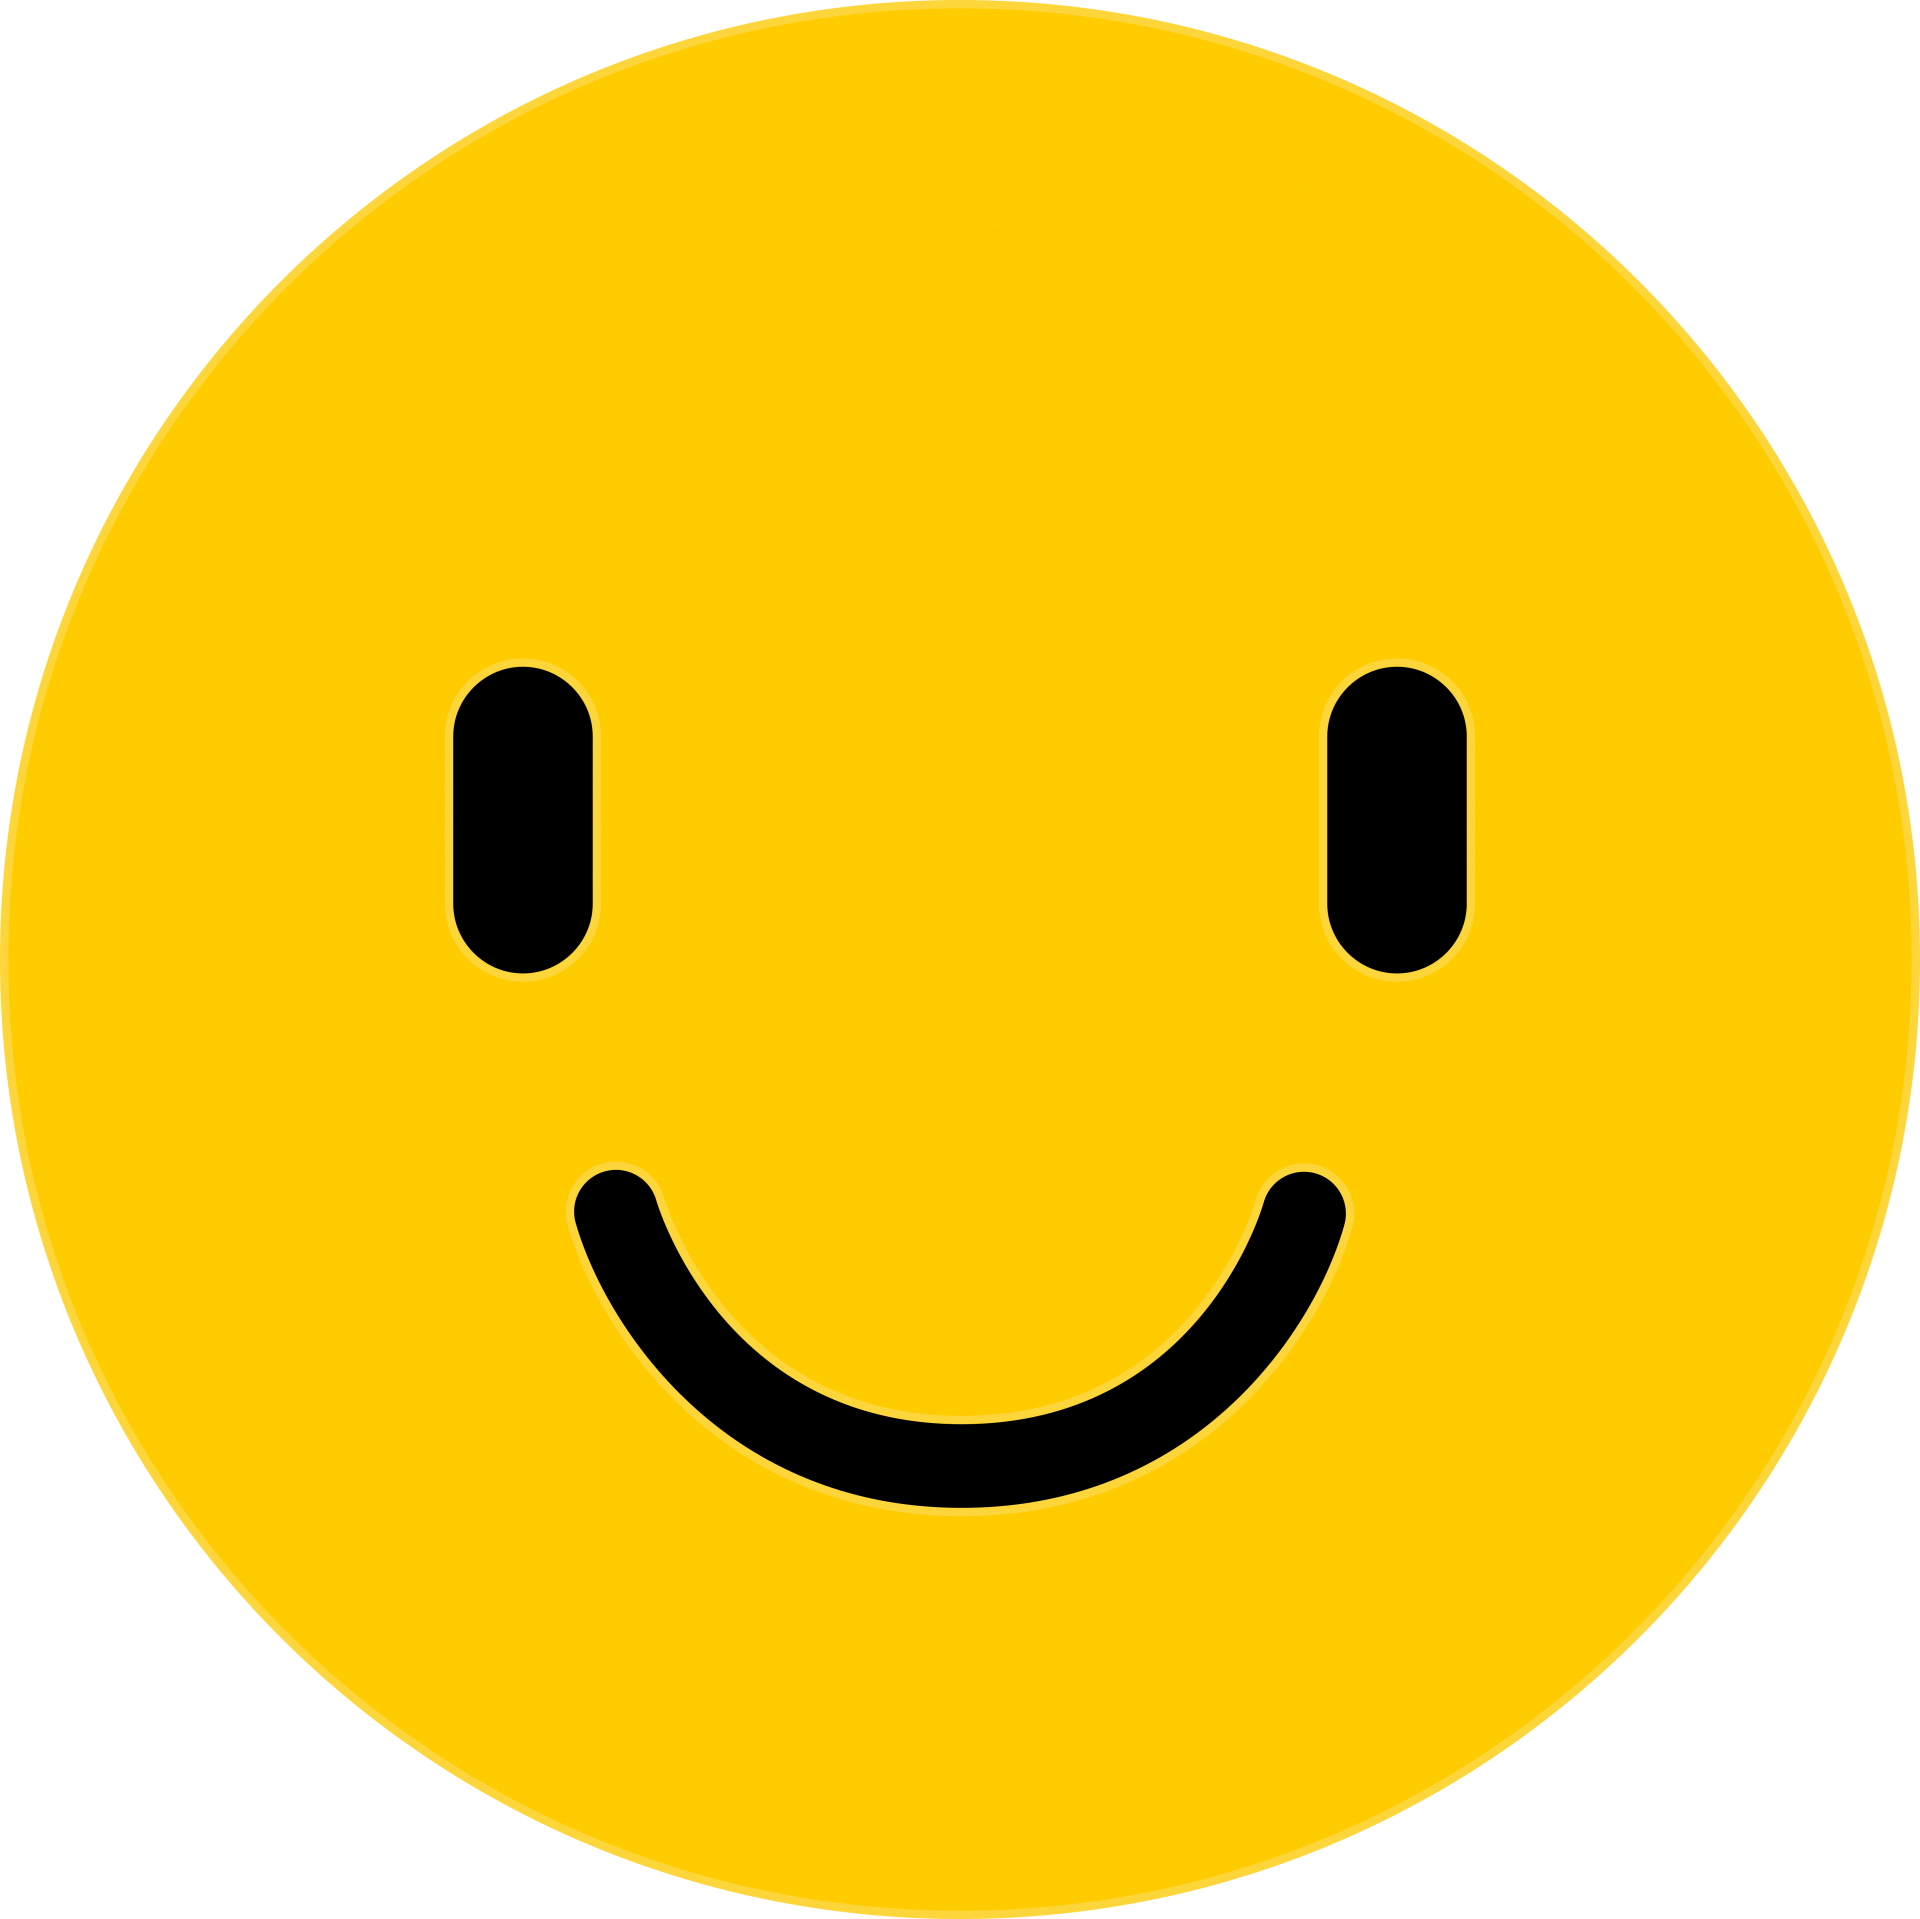 Yellow emoji face smiling